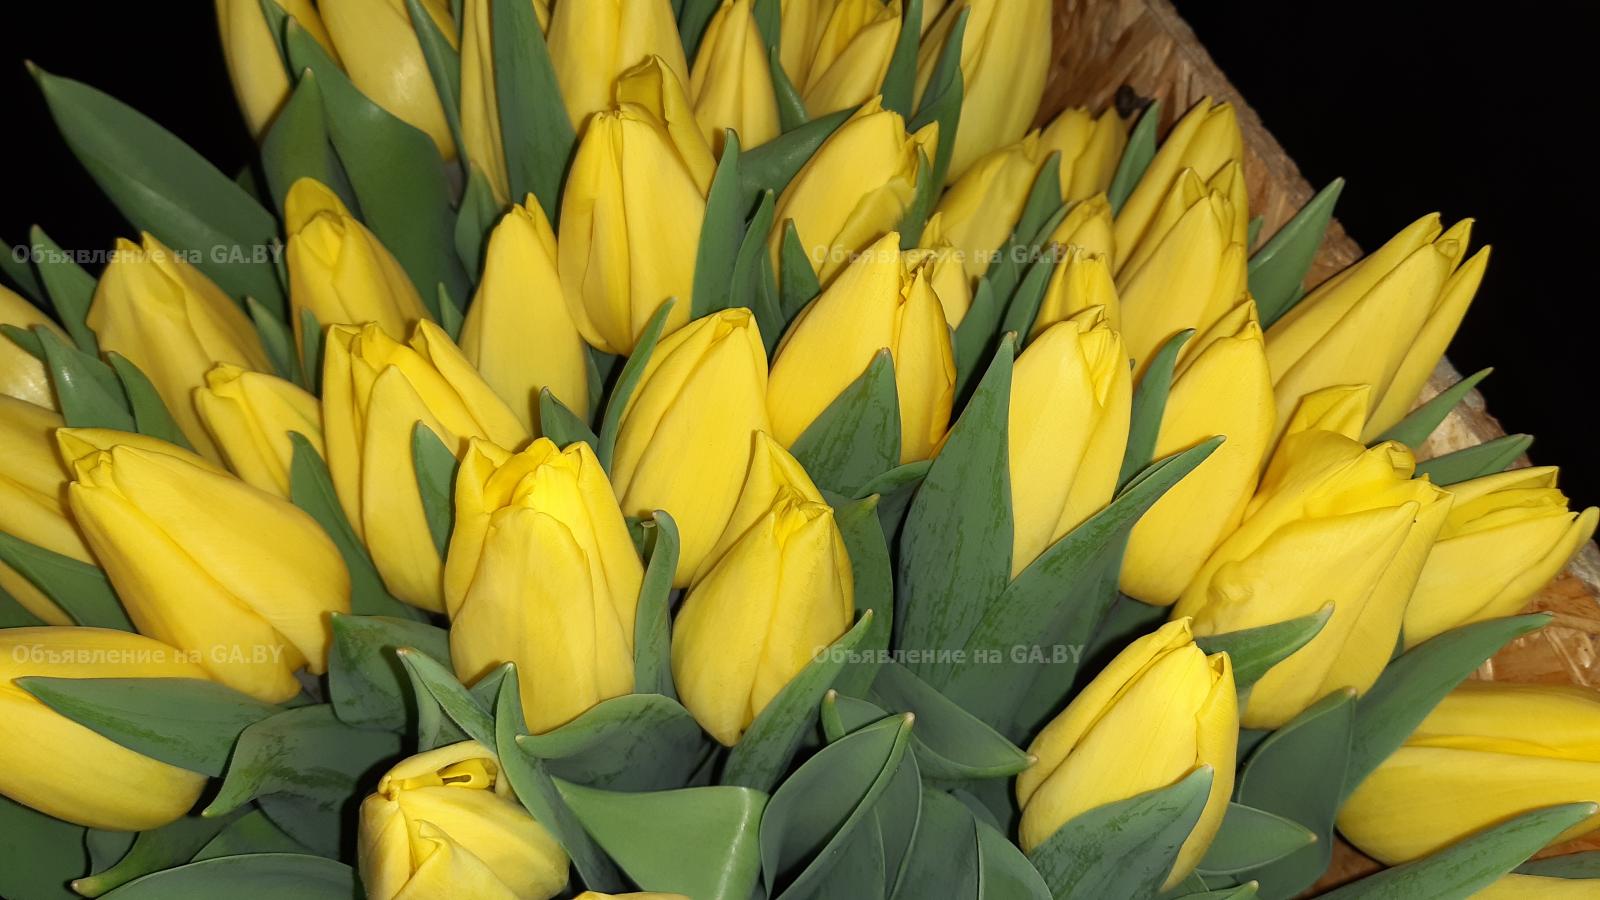 Продам Тюльпаны оптом к 8 марта - GA.BY